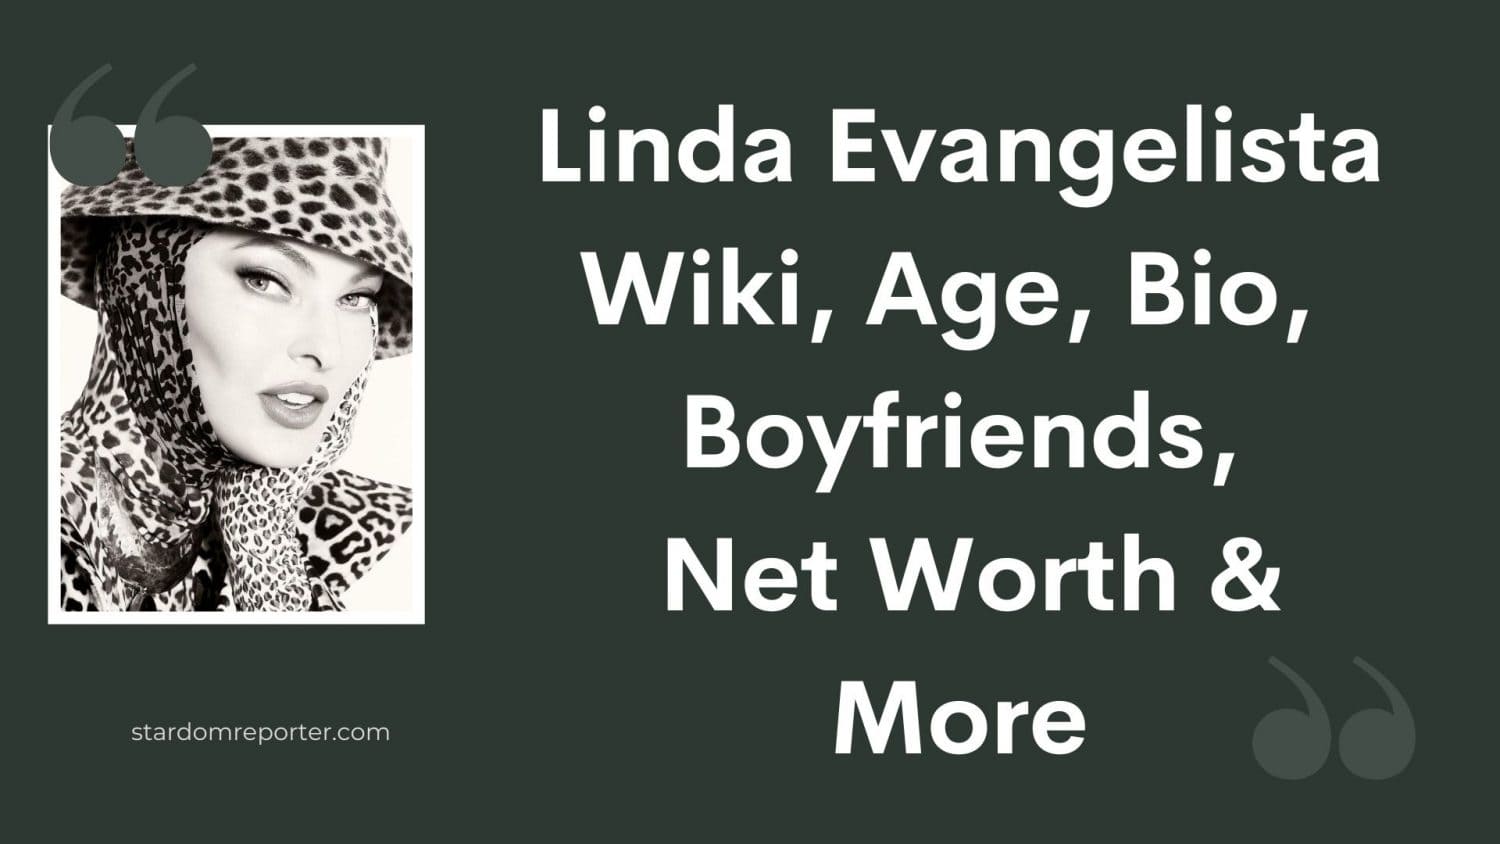 Linda Evangelista Wiki, Age, Bio, Boyfriends, Net Worth & More - 11